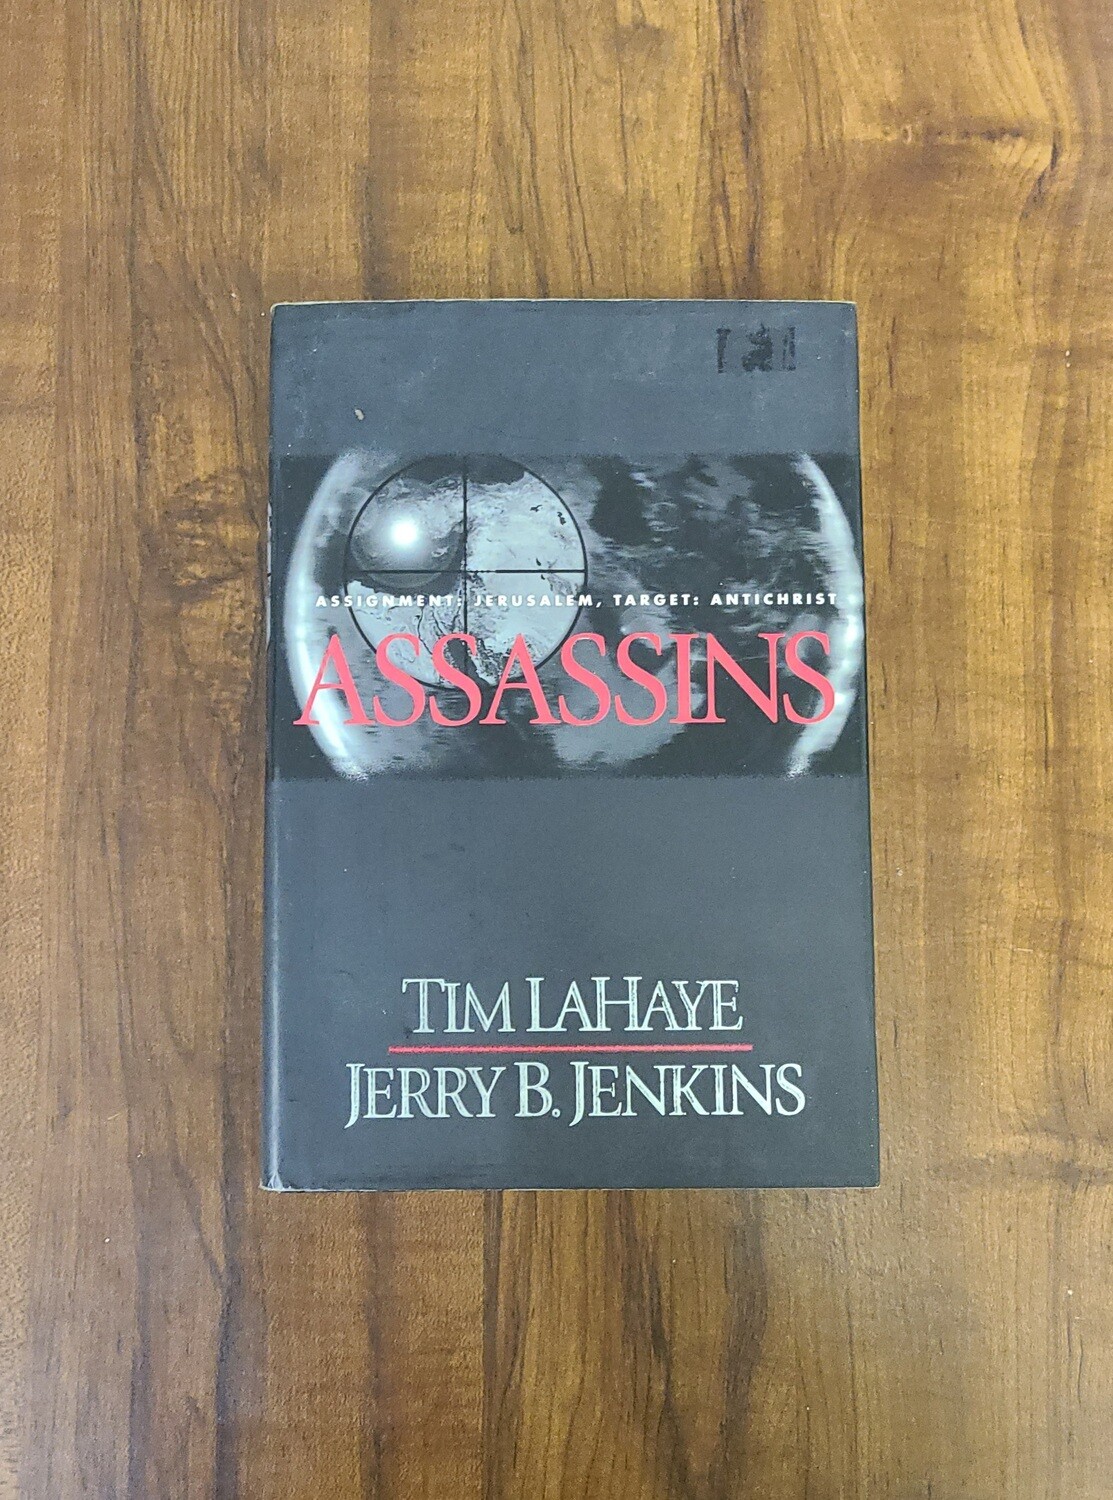 Assassins by Tim LaHaye & Jerry B. Jenkins